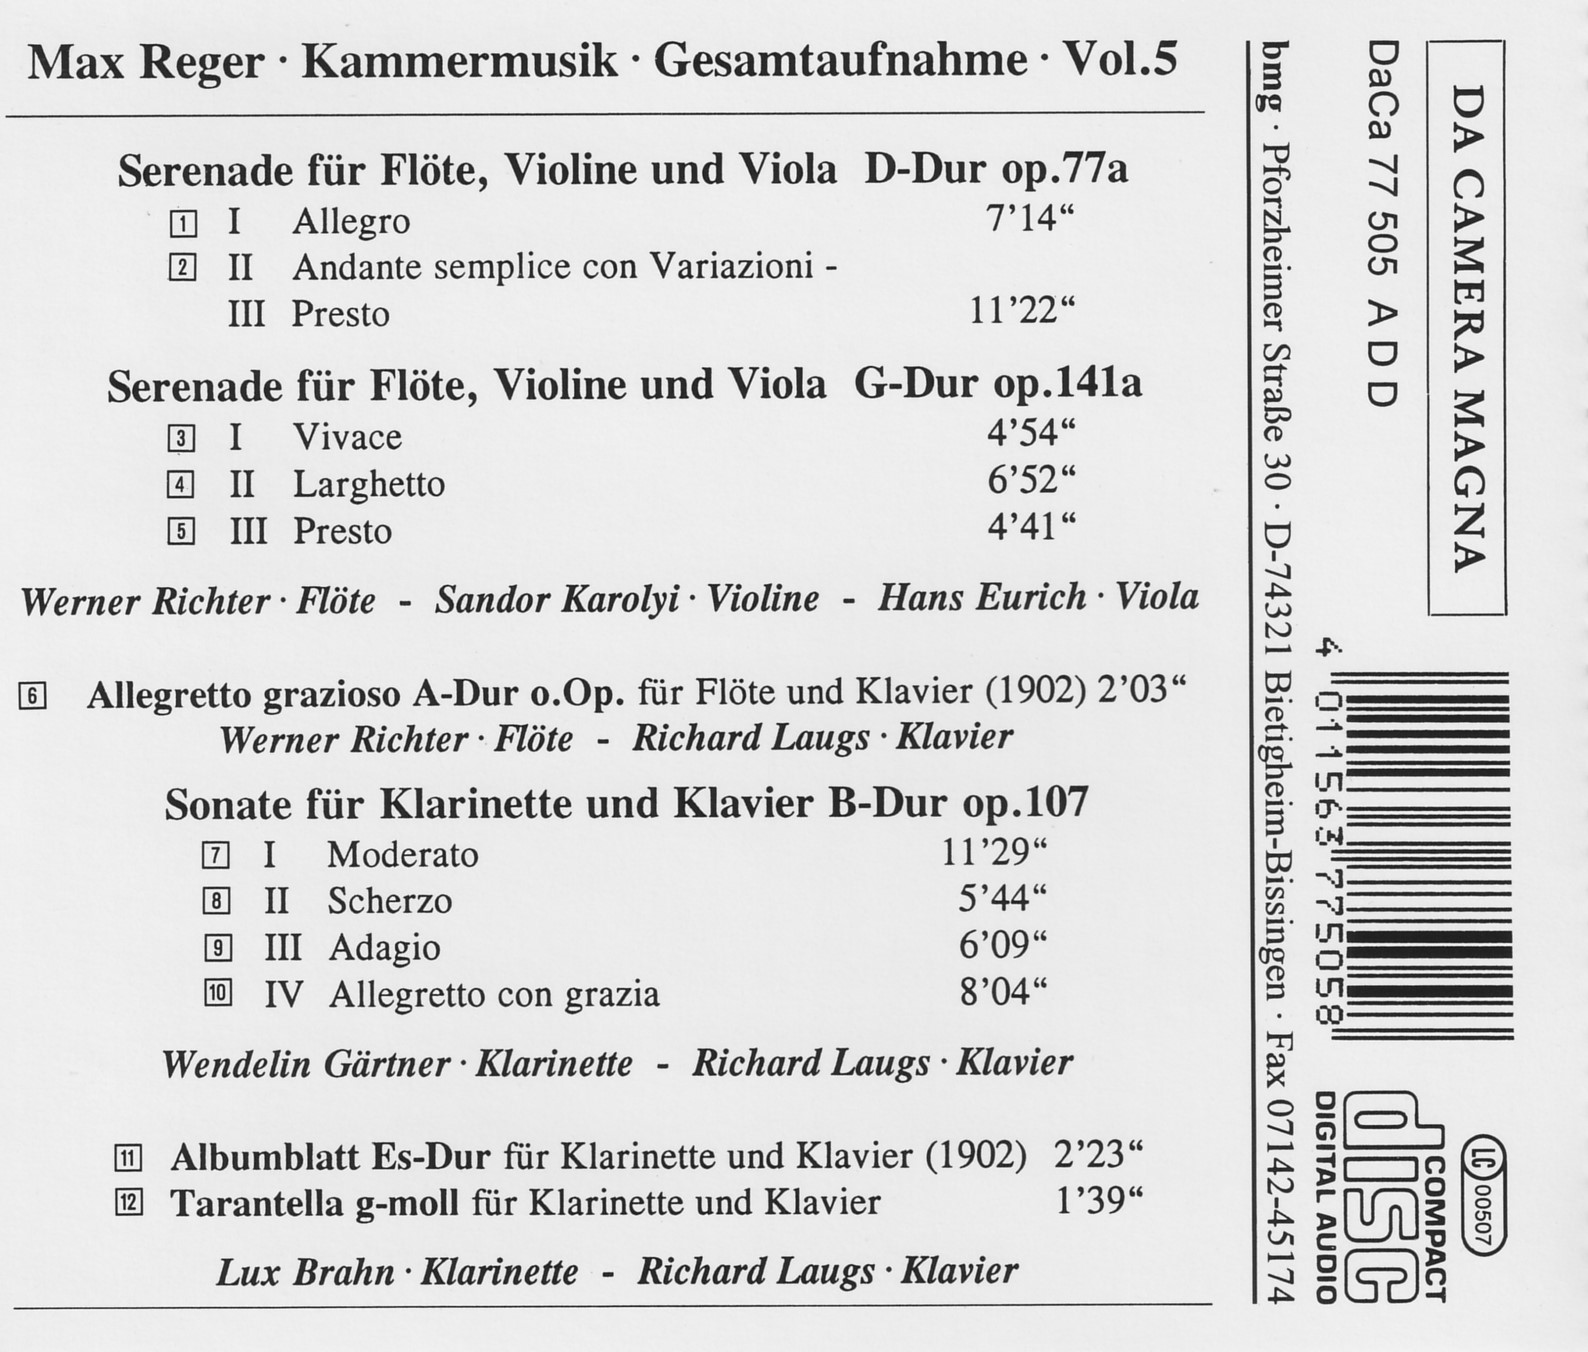 Max Reger - Kammermusik komplett Vol. 5